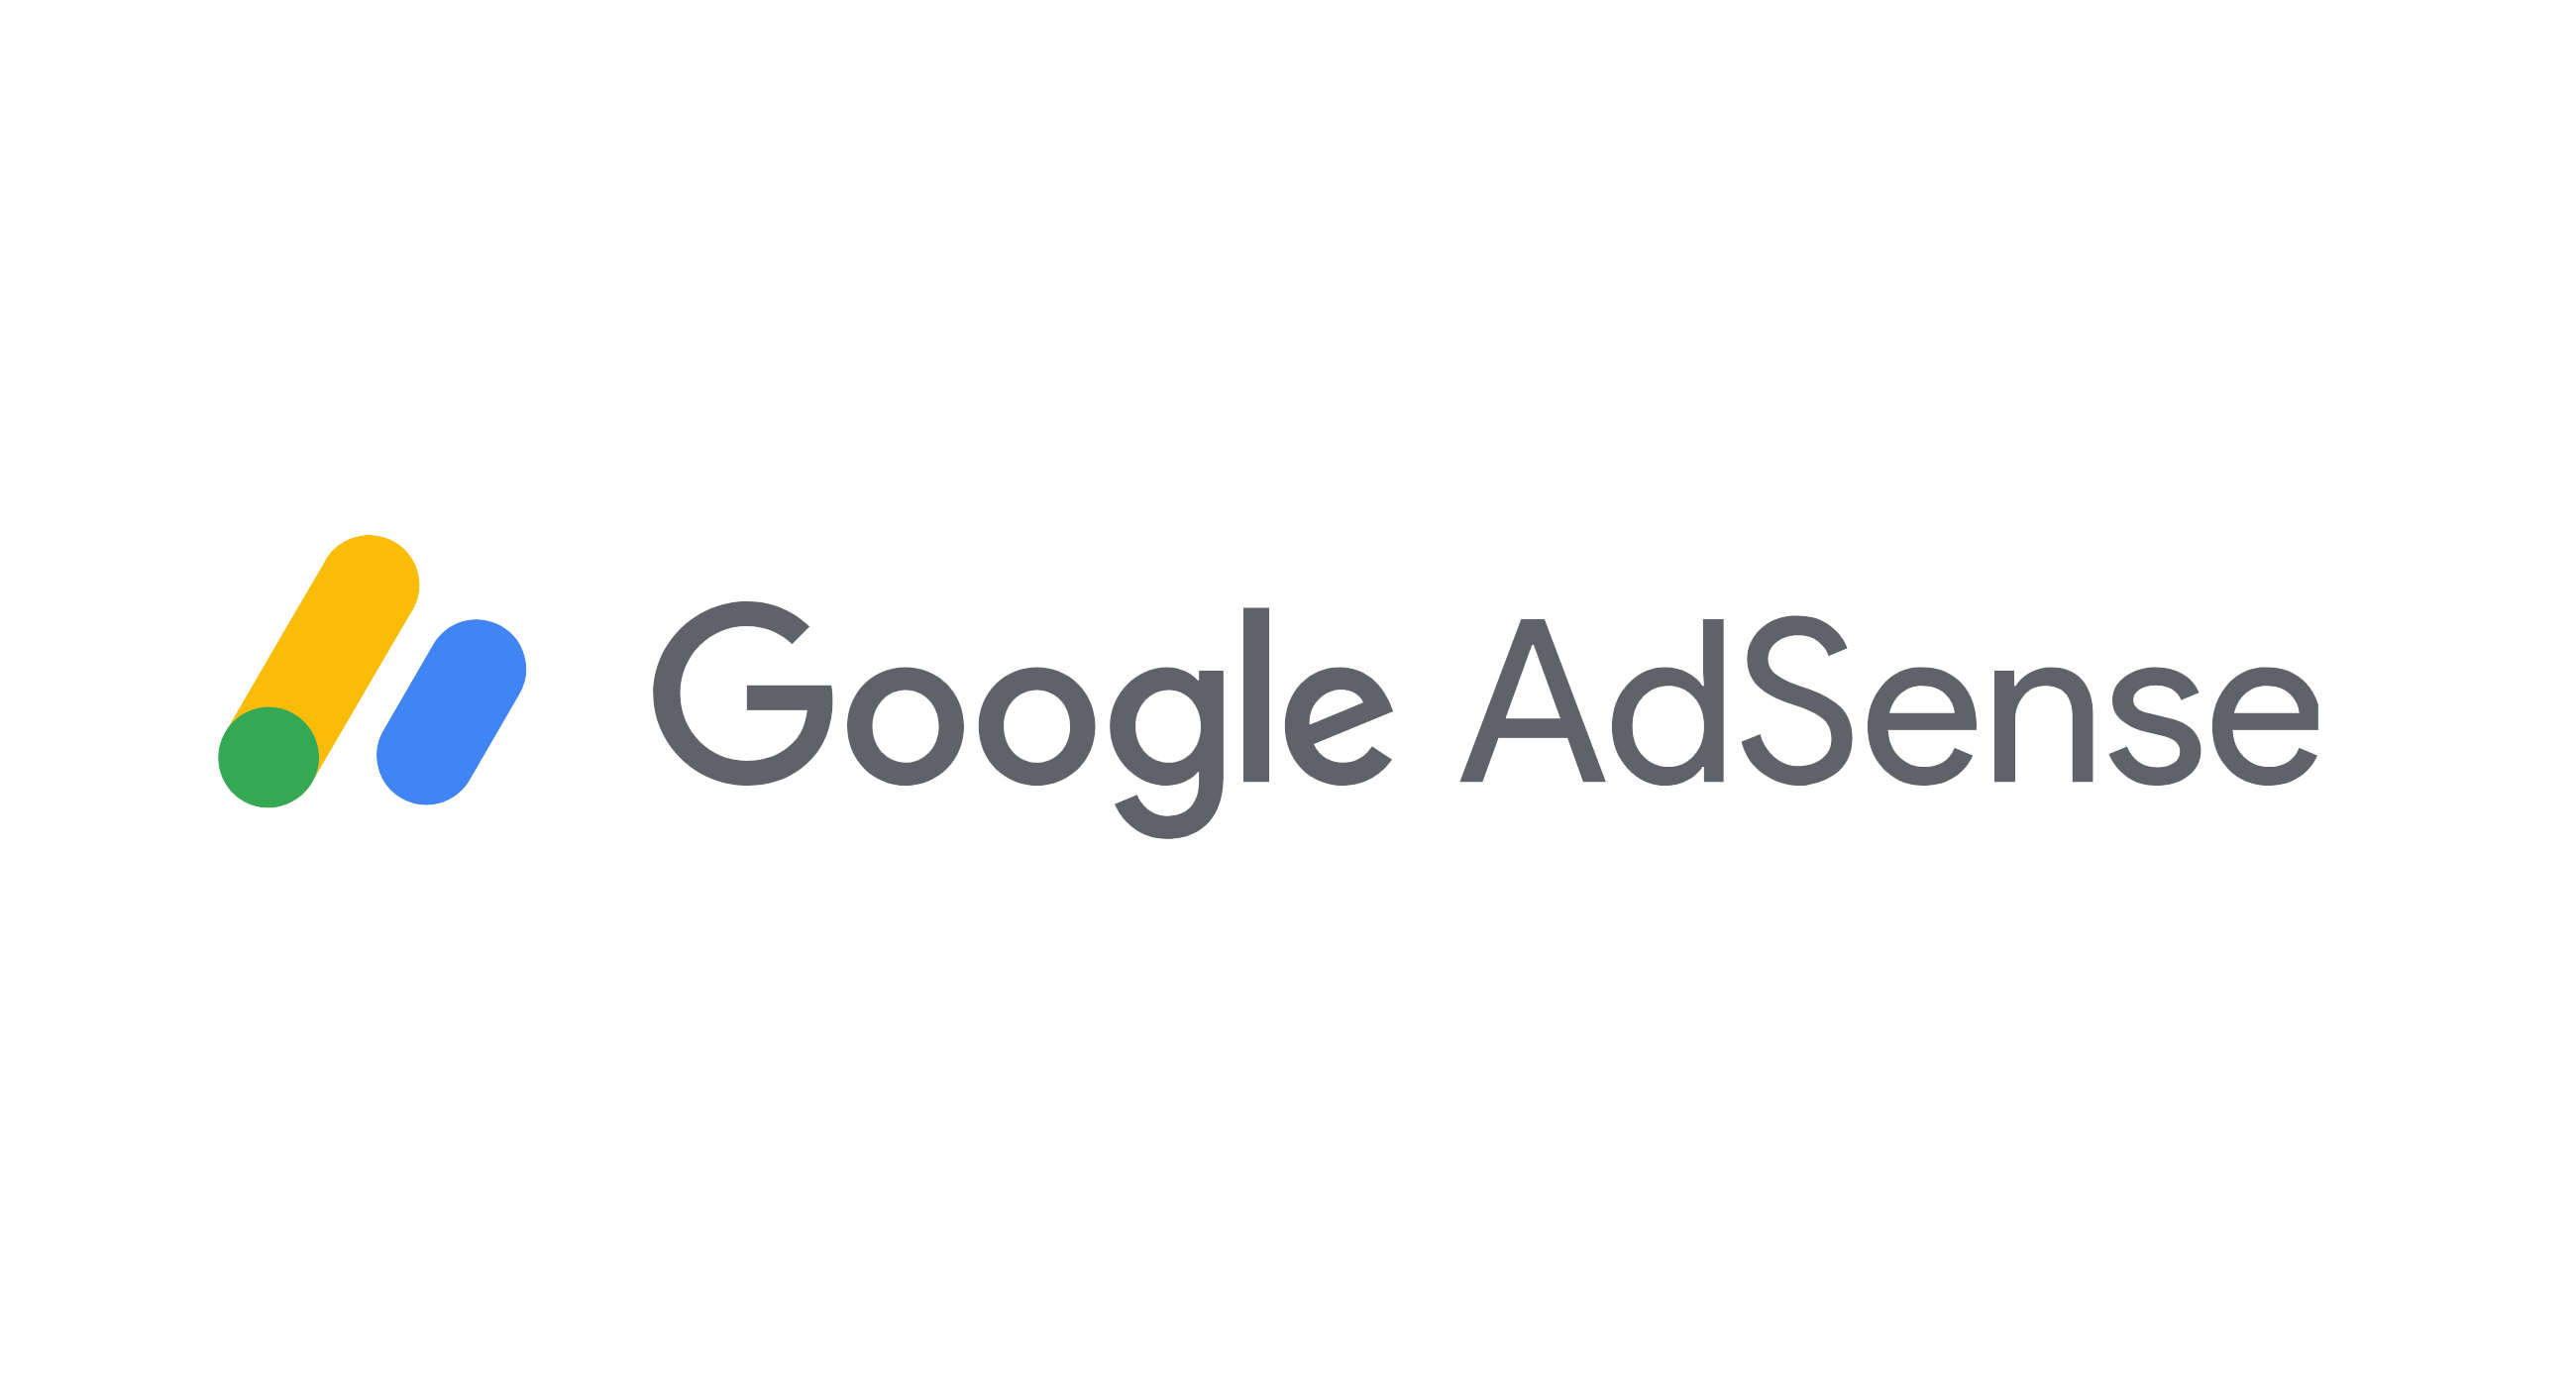 google adsense logo 11 | Techlog.gr - Χρήσιμα νέα τεχνολογίας